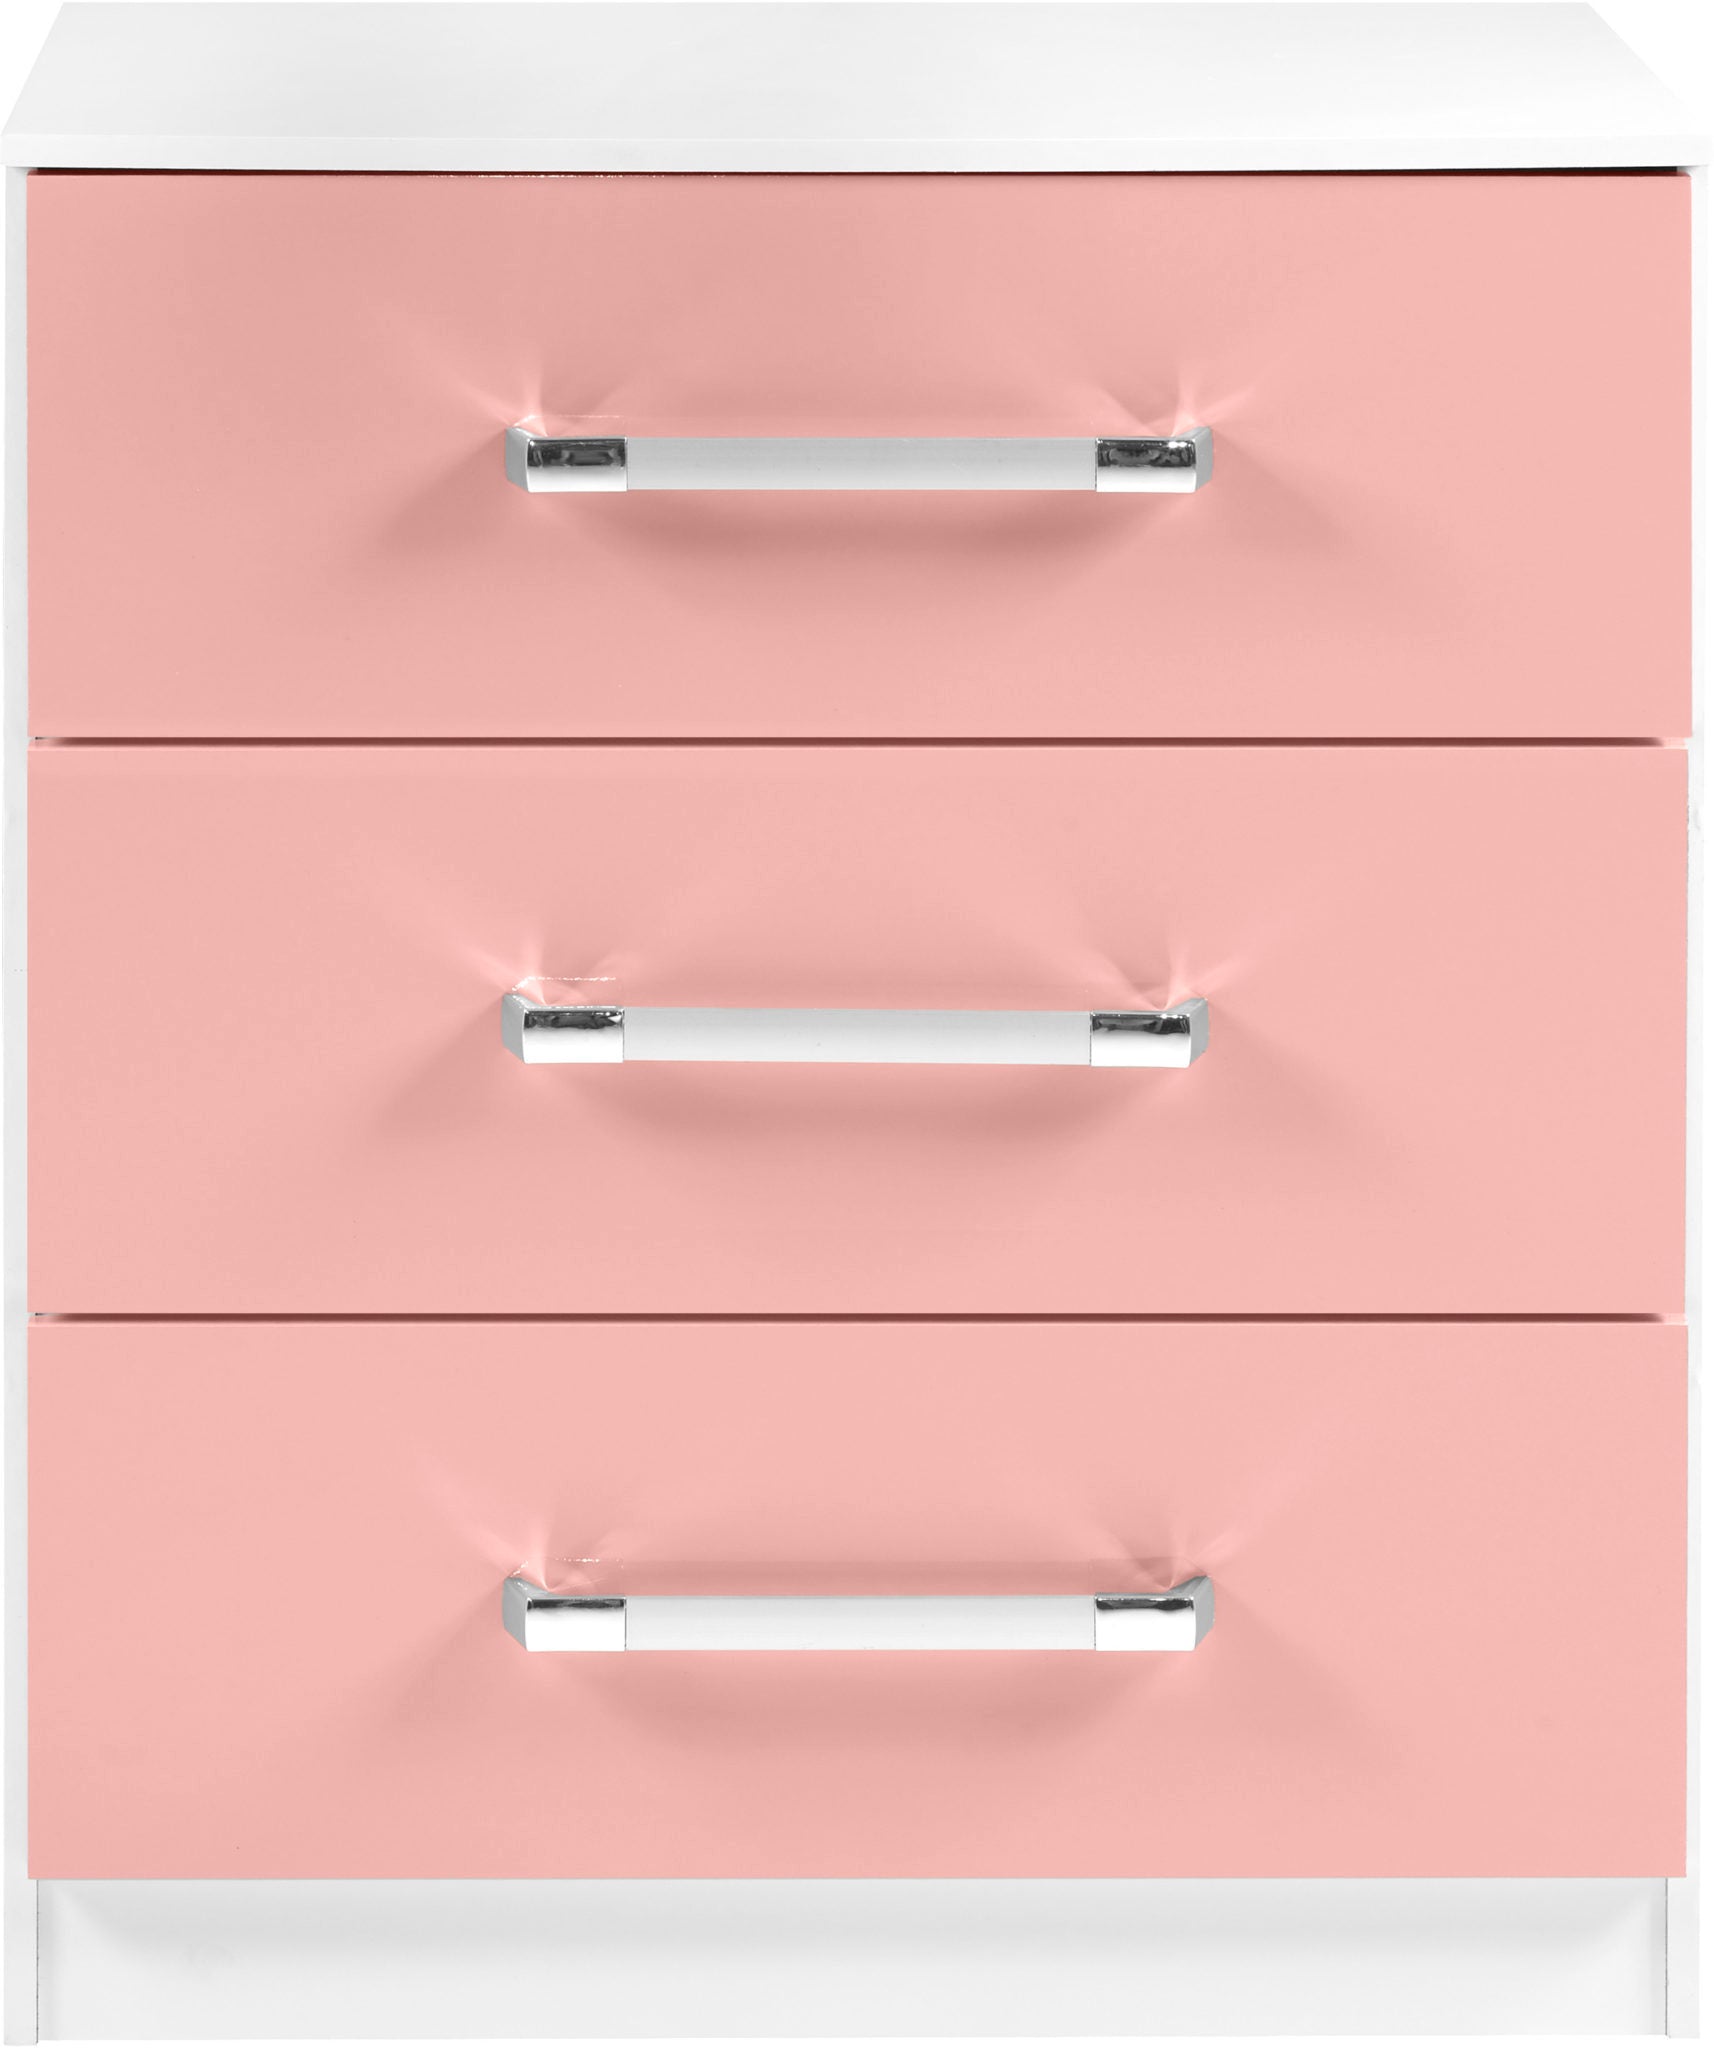 Jasper Bedroom Set - White/Pink Gloss